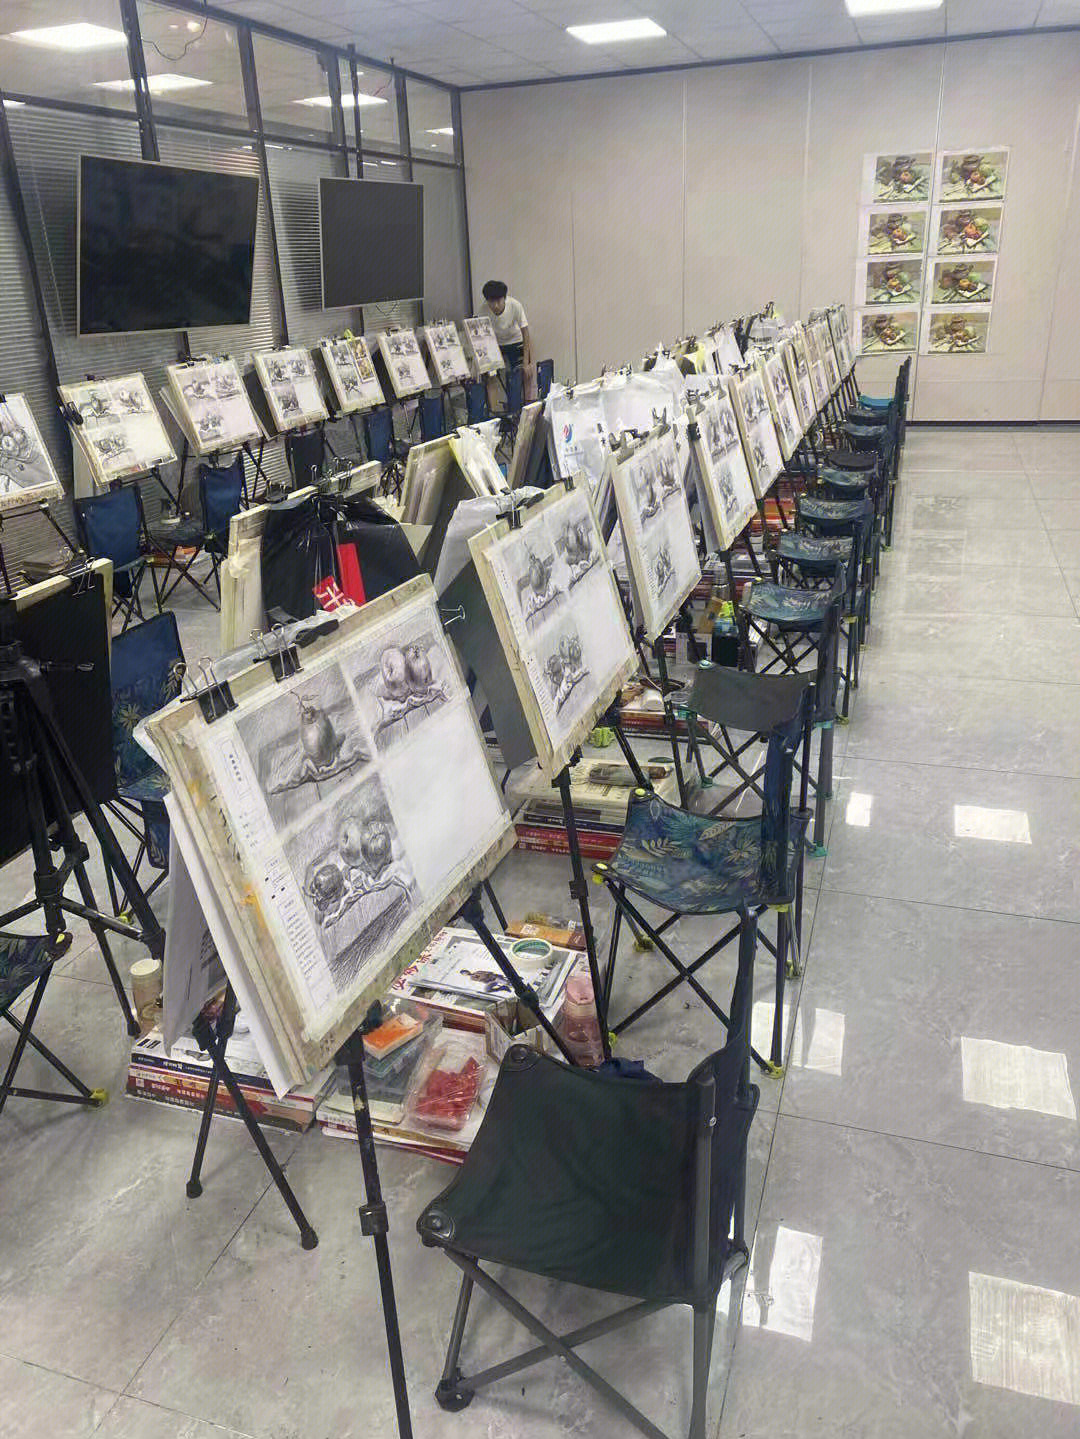 济南乐艺博睿画室是一所专业的美术艺考培训学校,地理位置优越,位于